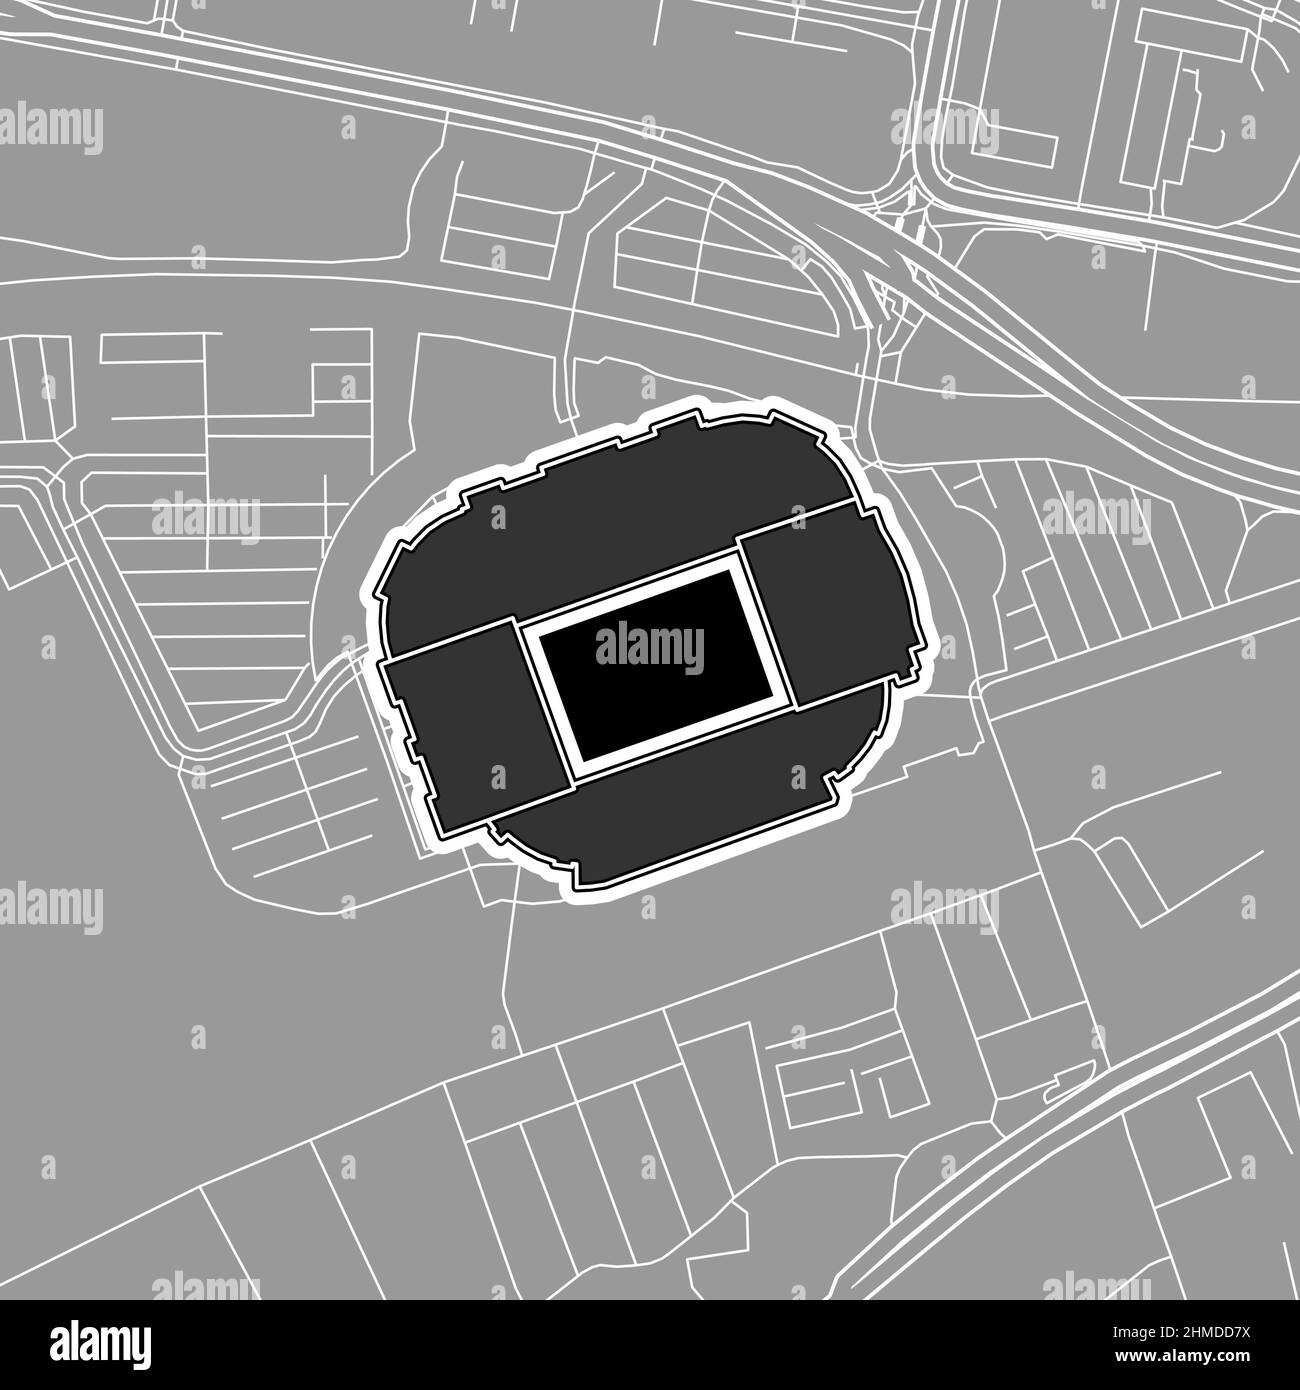 Manchester, Baseballstadion MLB, Vektorkarte. Die Baseballstatiumkarte wurde mit weißen Flächen und Linien für Hauptstraßen, Nebenstraßen, gezeichnet. Stock Vektor